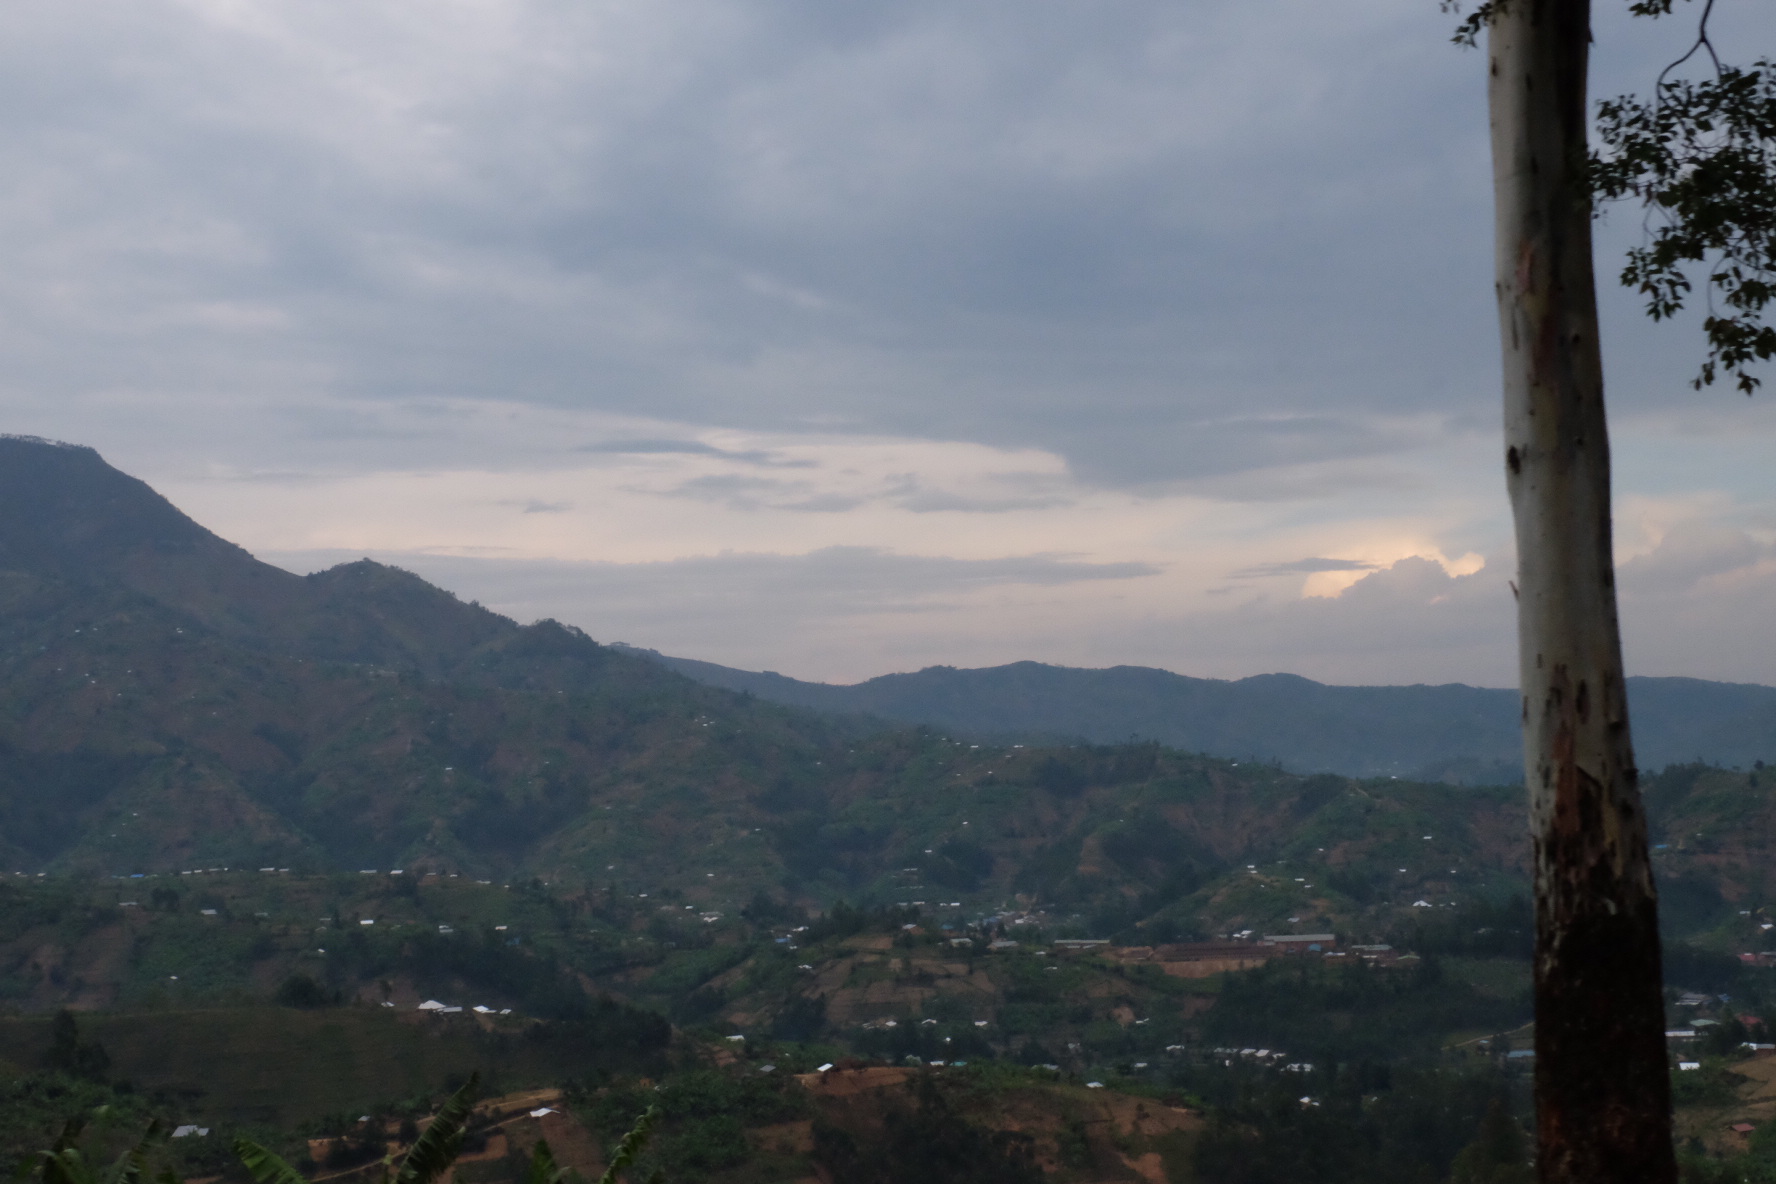 IMG 1467 - 24 Hours in Kigali, Rwanda